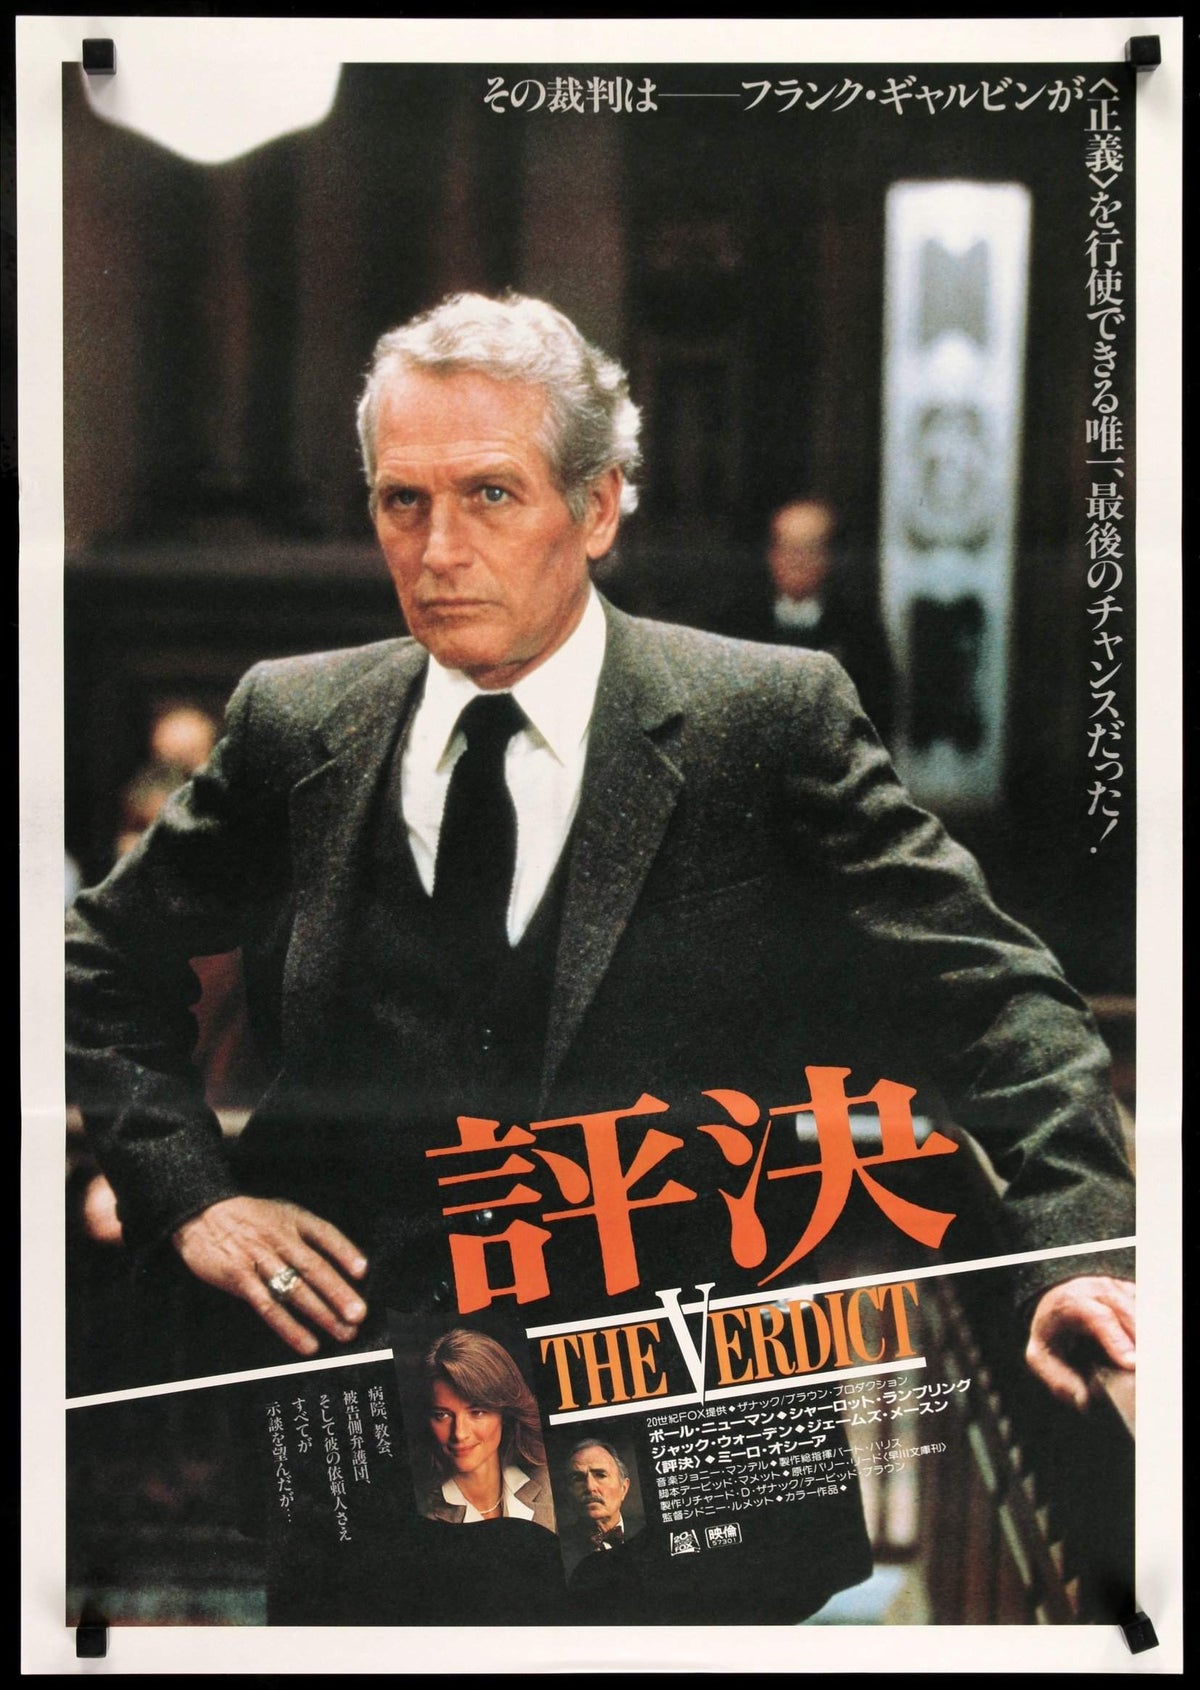 Verdict (1982) original movie poster for sale at Original Film Art